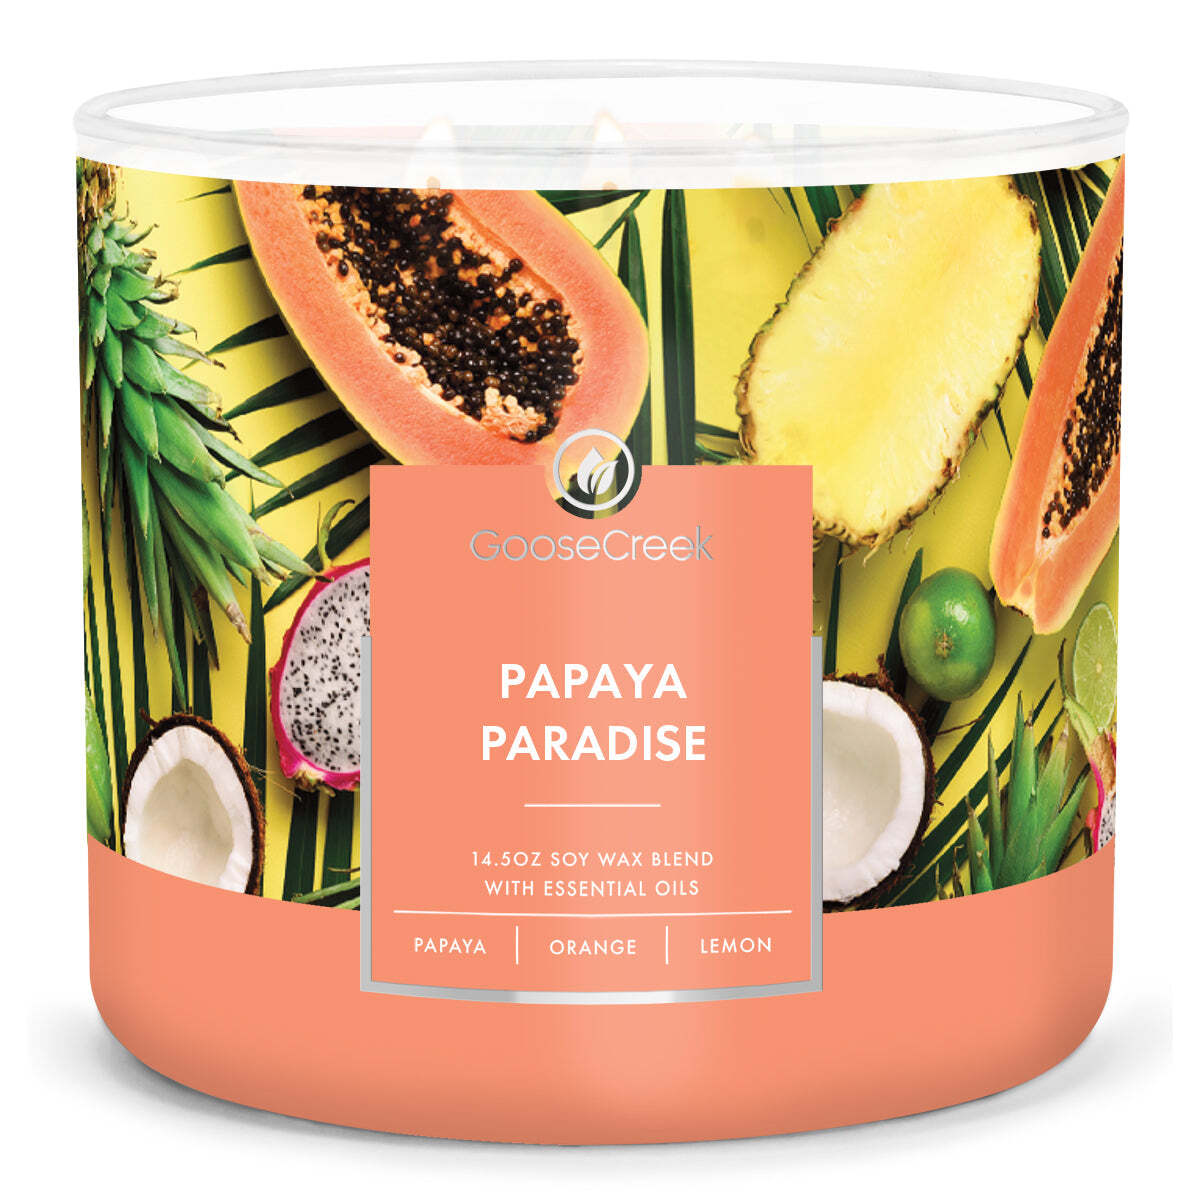 Papaya Paradise Large 3-Wick Candle